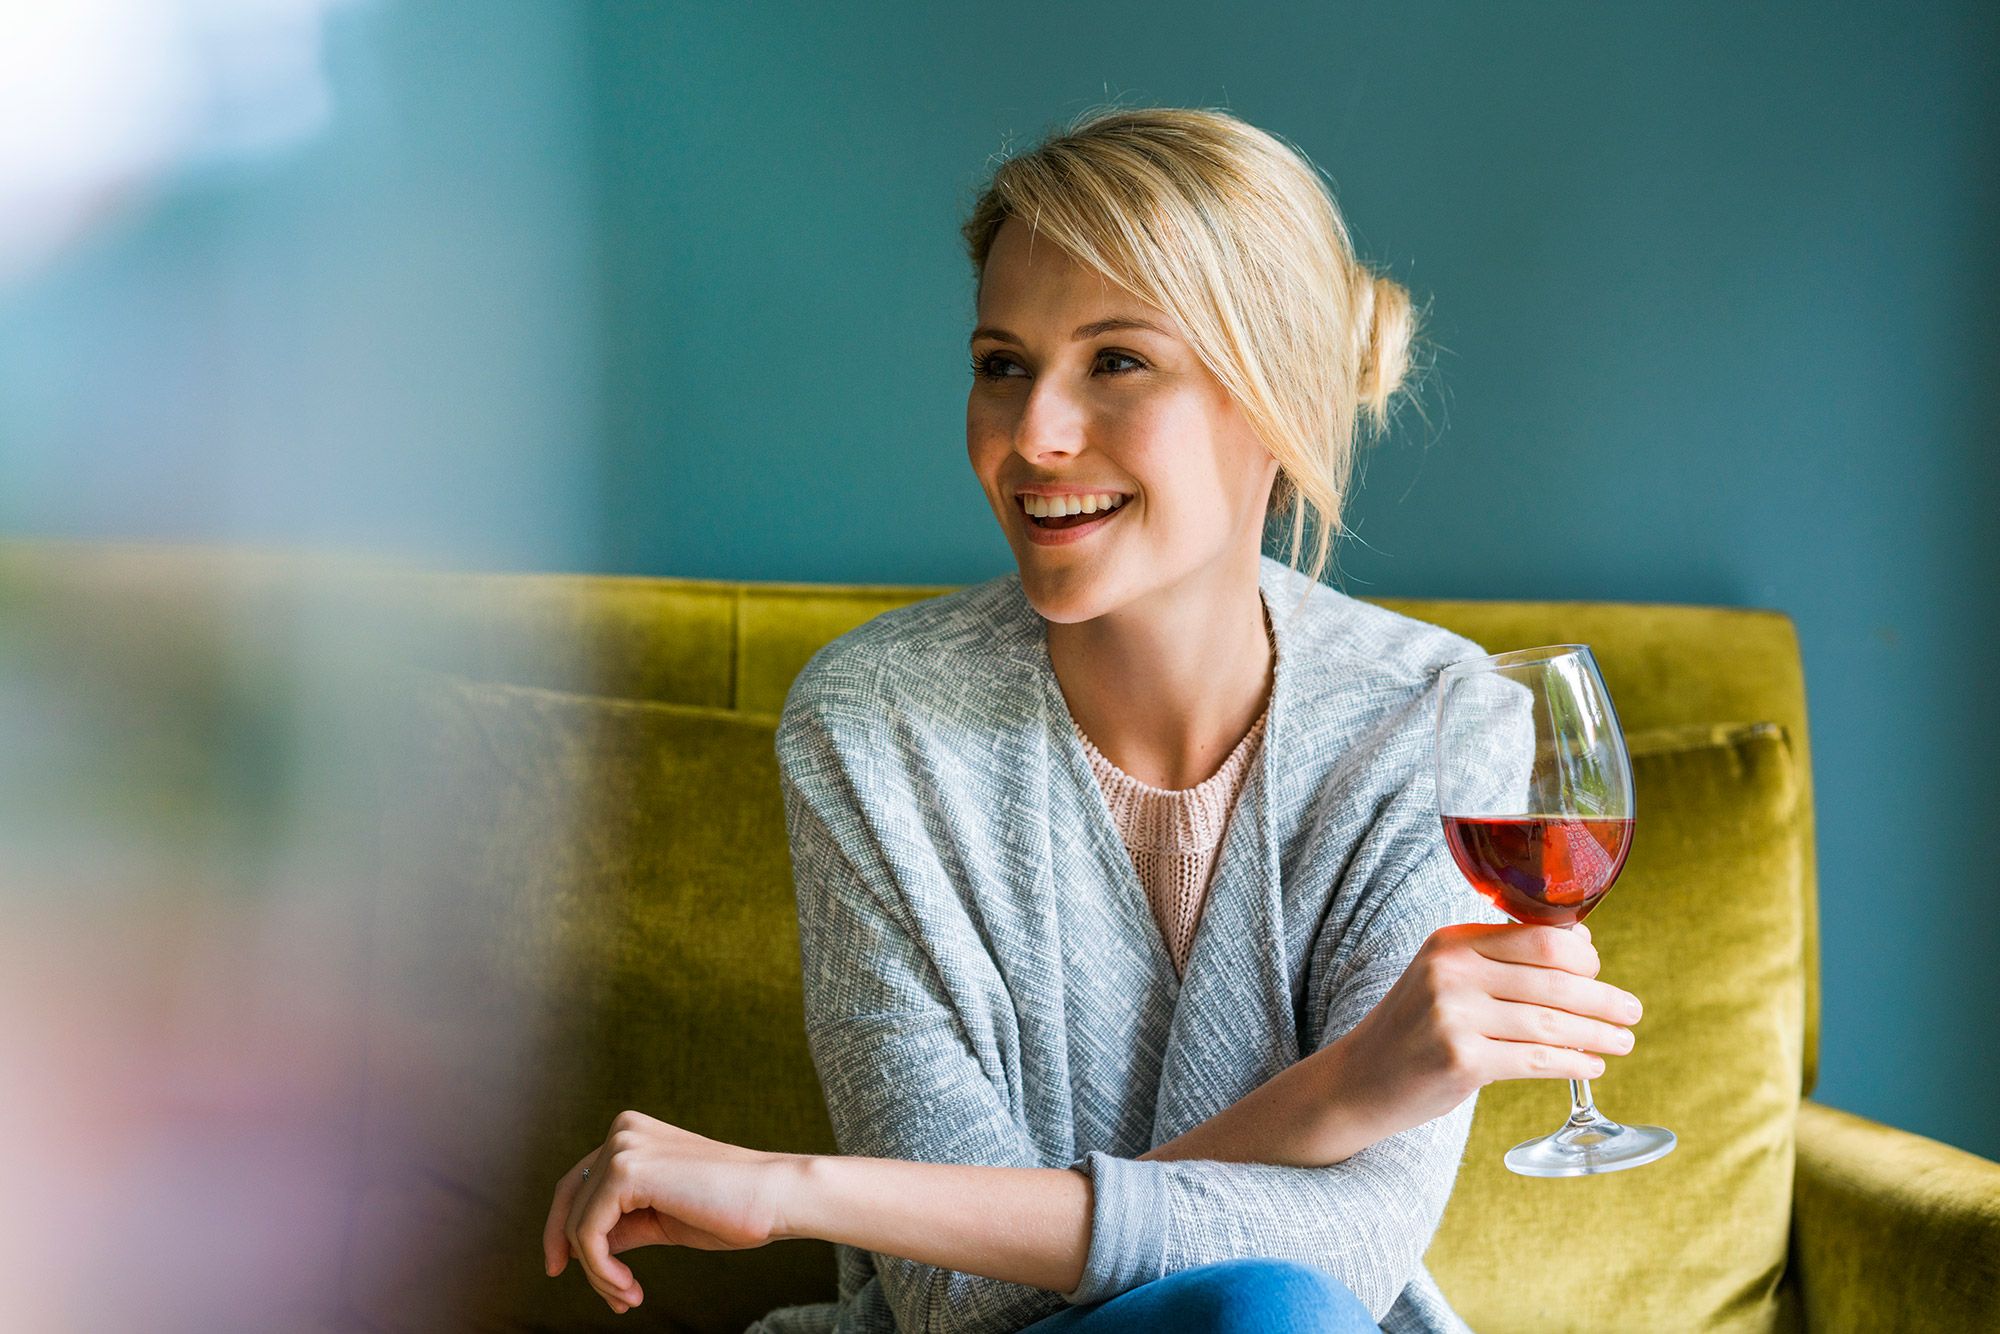 Calorie vino: bere un bicchiere fa ingrassare?